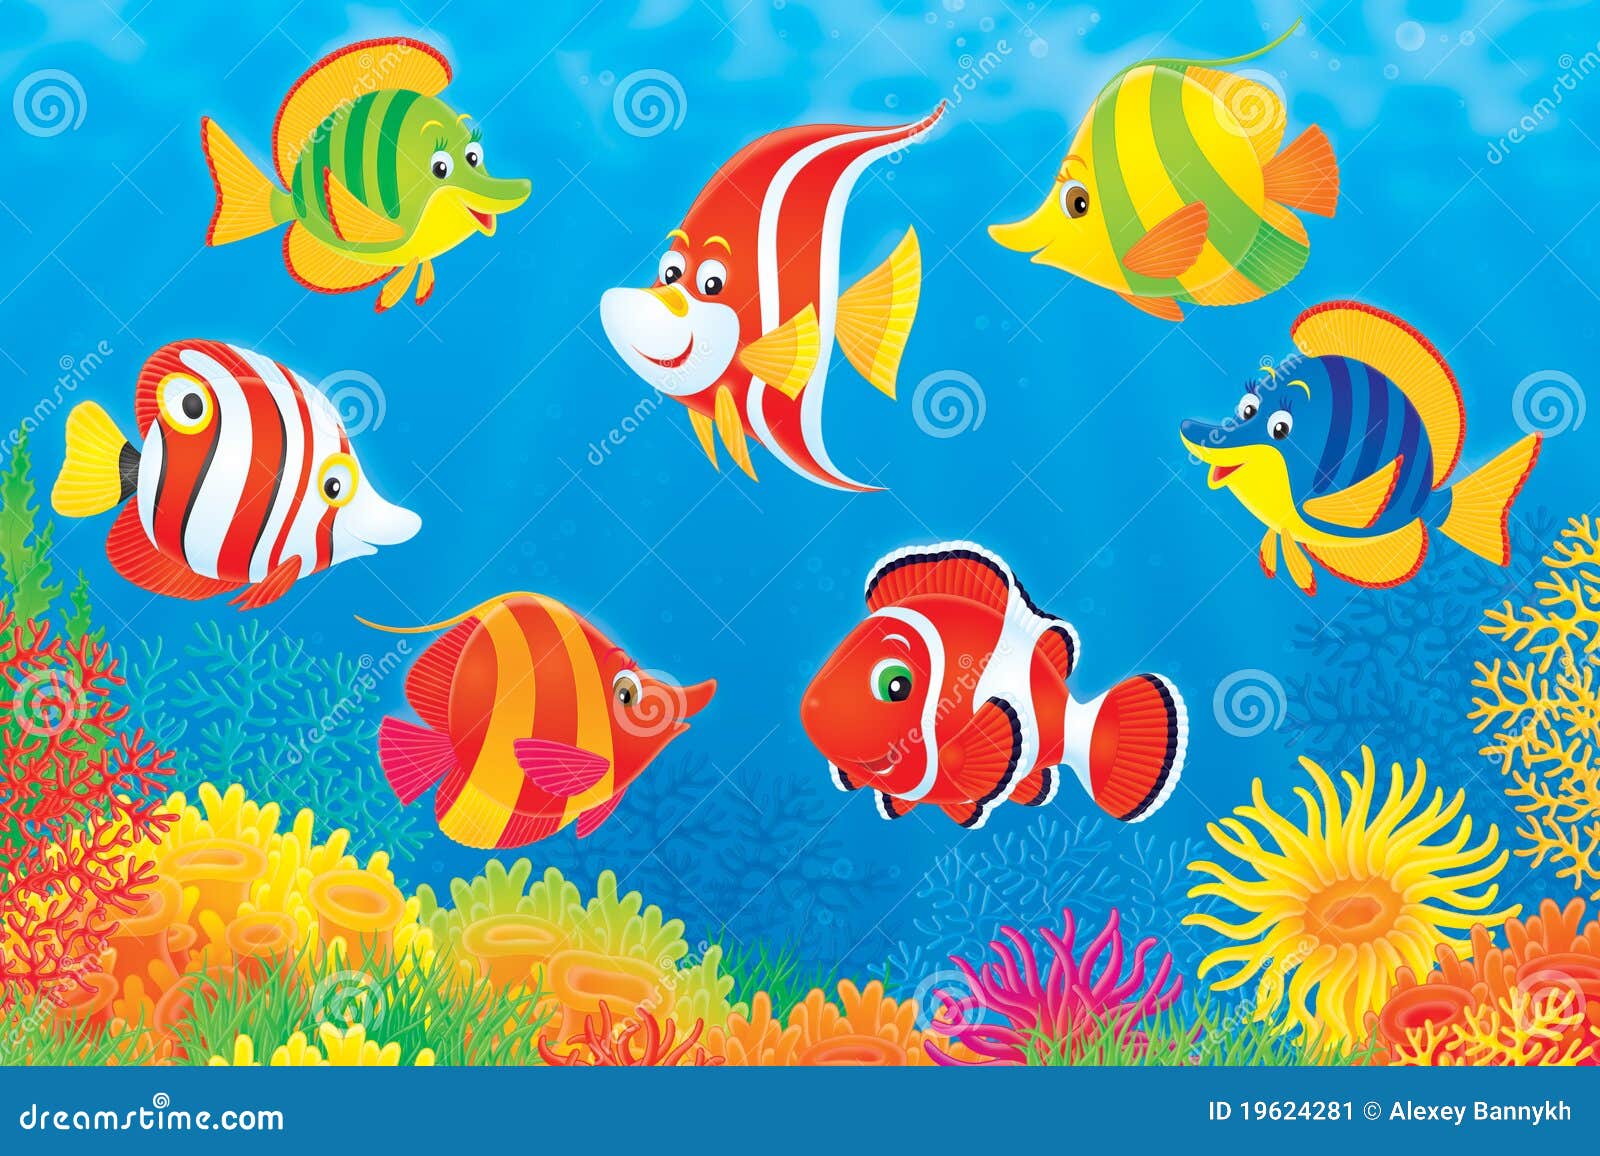 επάνω από το σκόπελο ψαριών &. επάνω από τη ζωηρόχρωμη θάλασσα σκηνής σκοπέλων απεικόνισης ψαριών κοραλλιών clipart που κολυμπά τροπικό υποβρύχιο